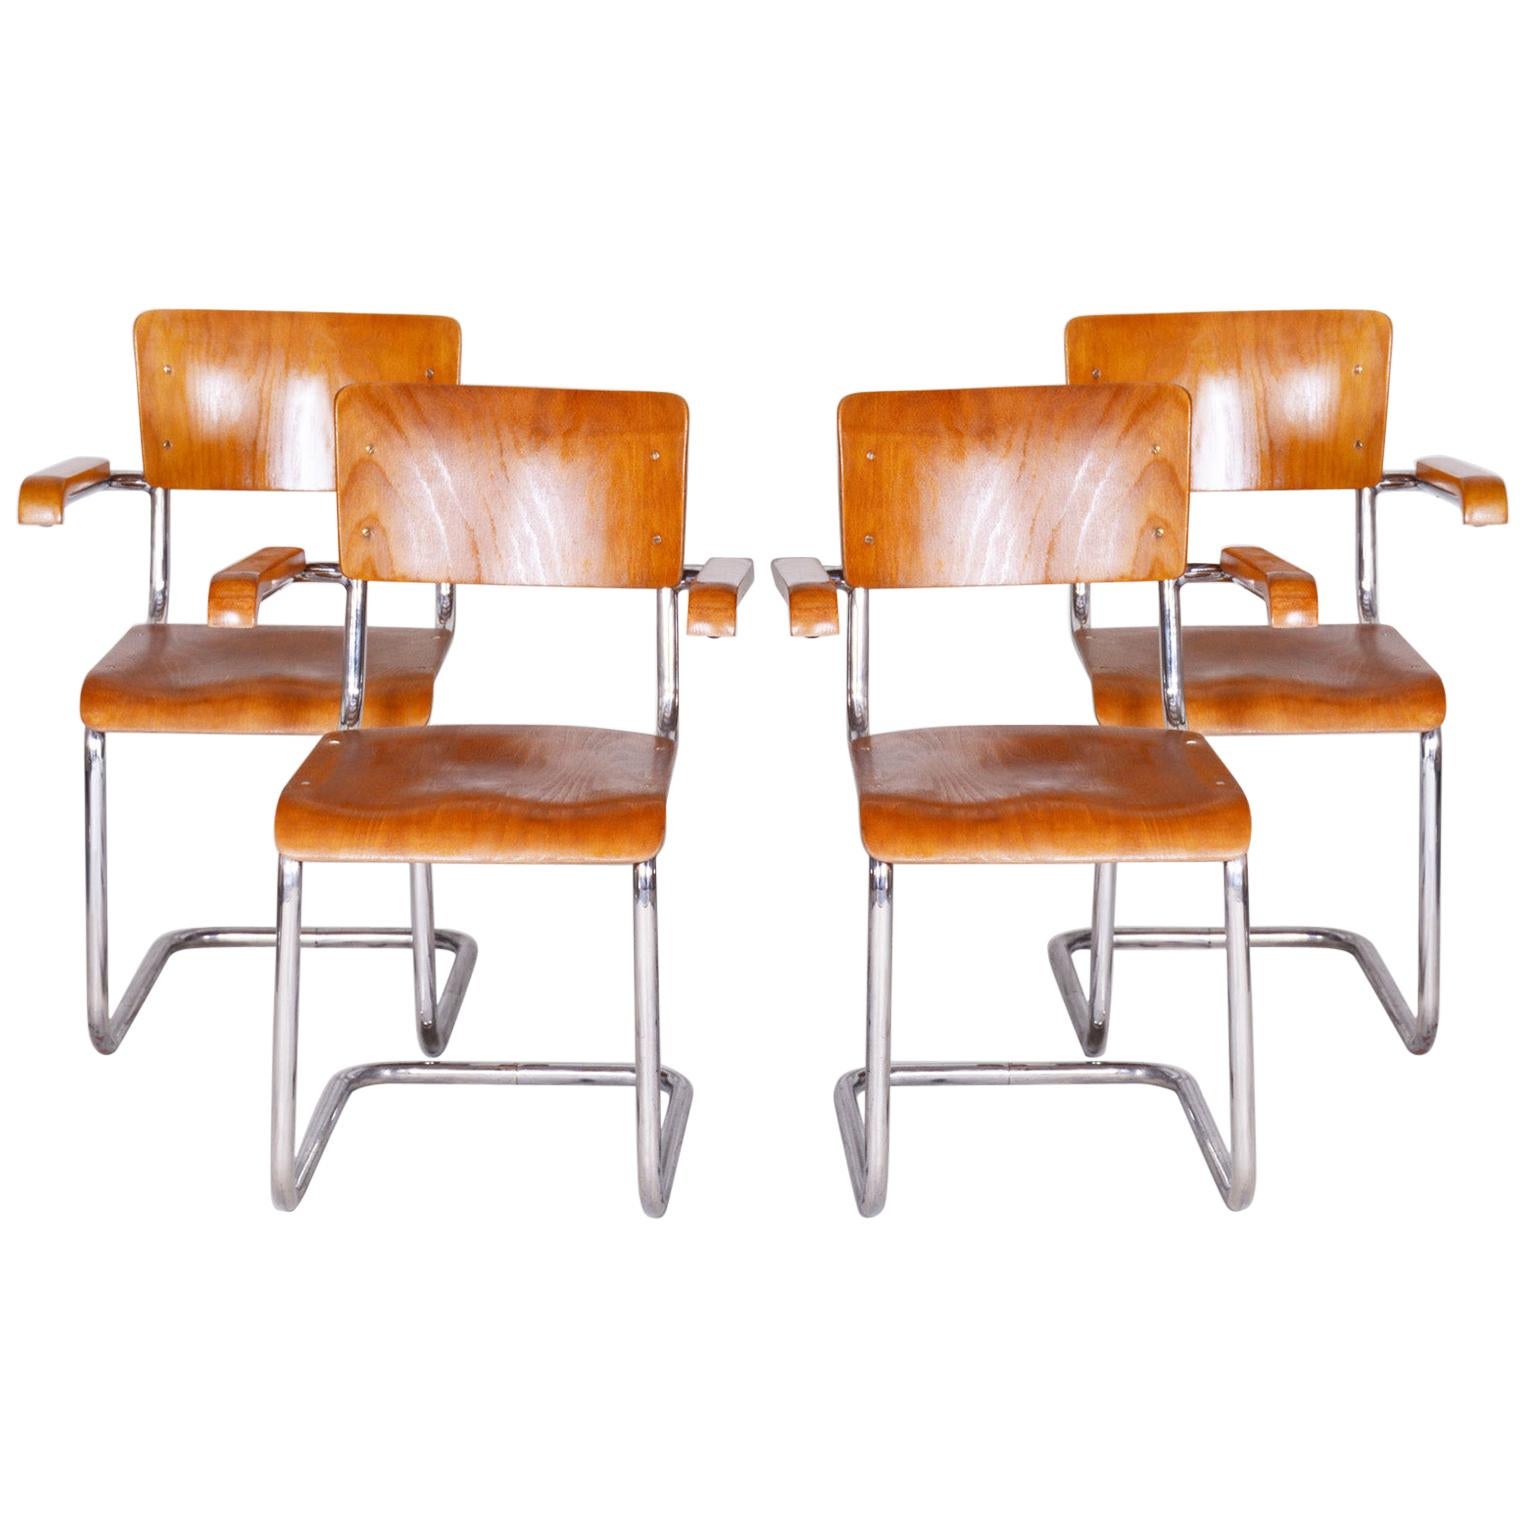 Ensemble de fauteuils Bauhaus en hêtre tchèque, Vichr a Spol., quatre Pieces, Chrome, années 1930